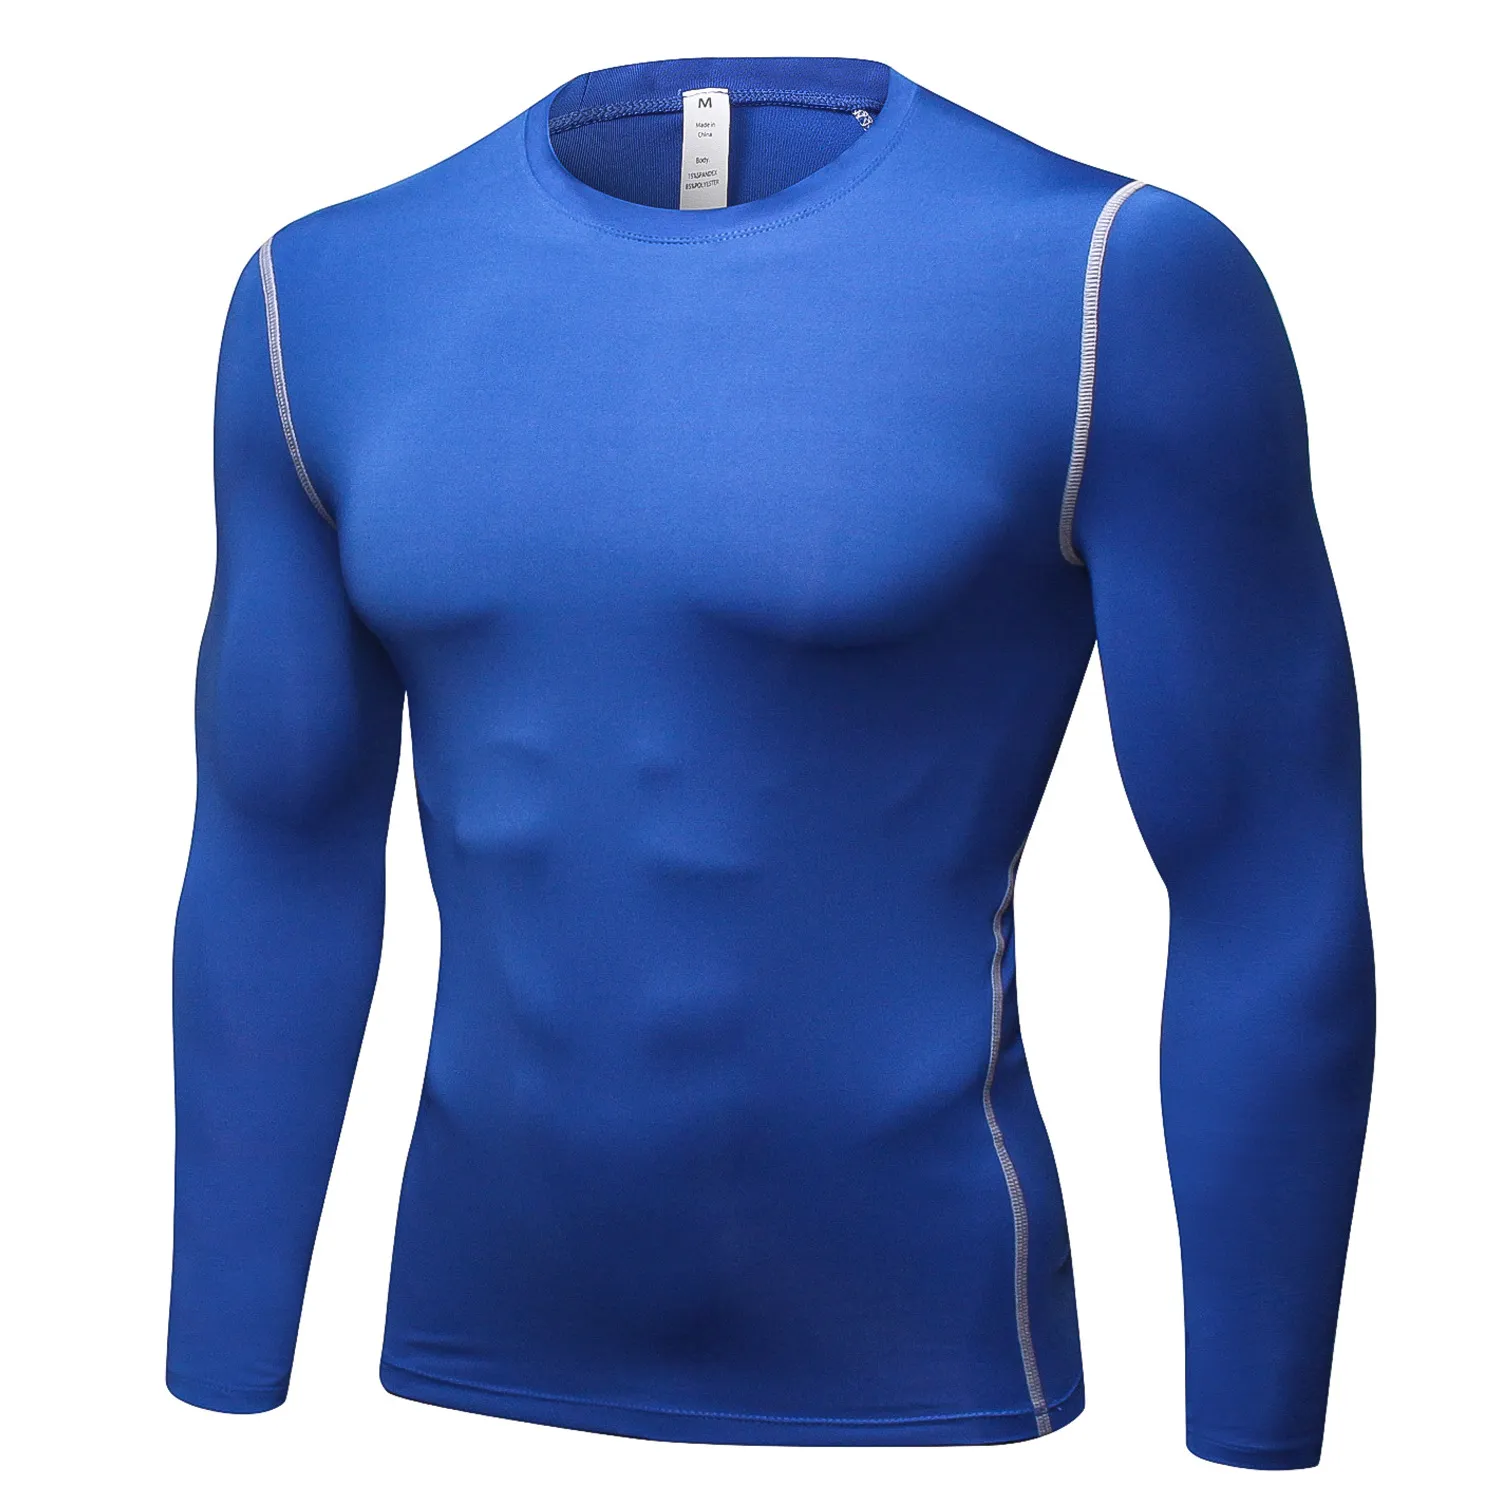 Män Kortärmad Fitness Basket Running Sport T Shirt Termisk Muskel Bodybuilding Gym Kompression Tights Jersey Jacket Tops